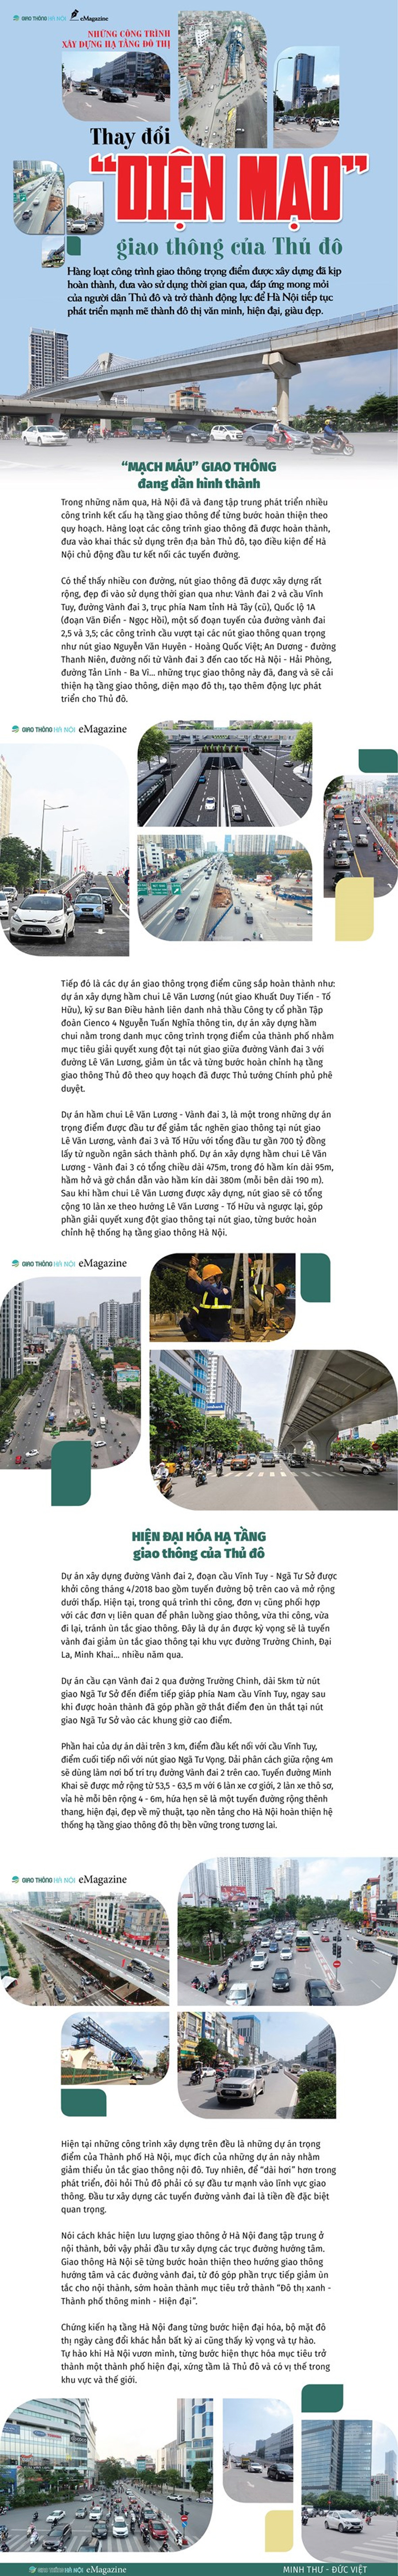 Những công trình xây dựng hạ tầng đô thị: Thay đổi diện mạo giao thông của Hà Nội - Ảnh 1